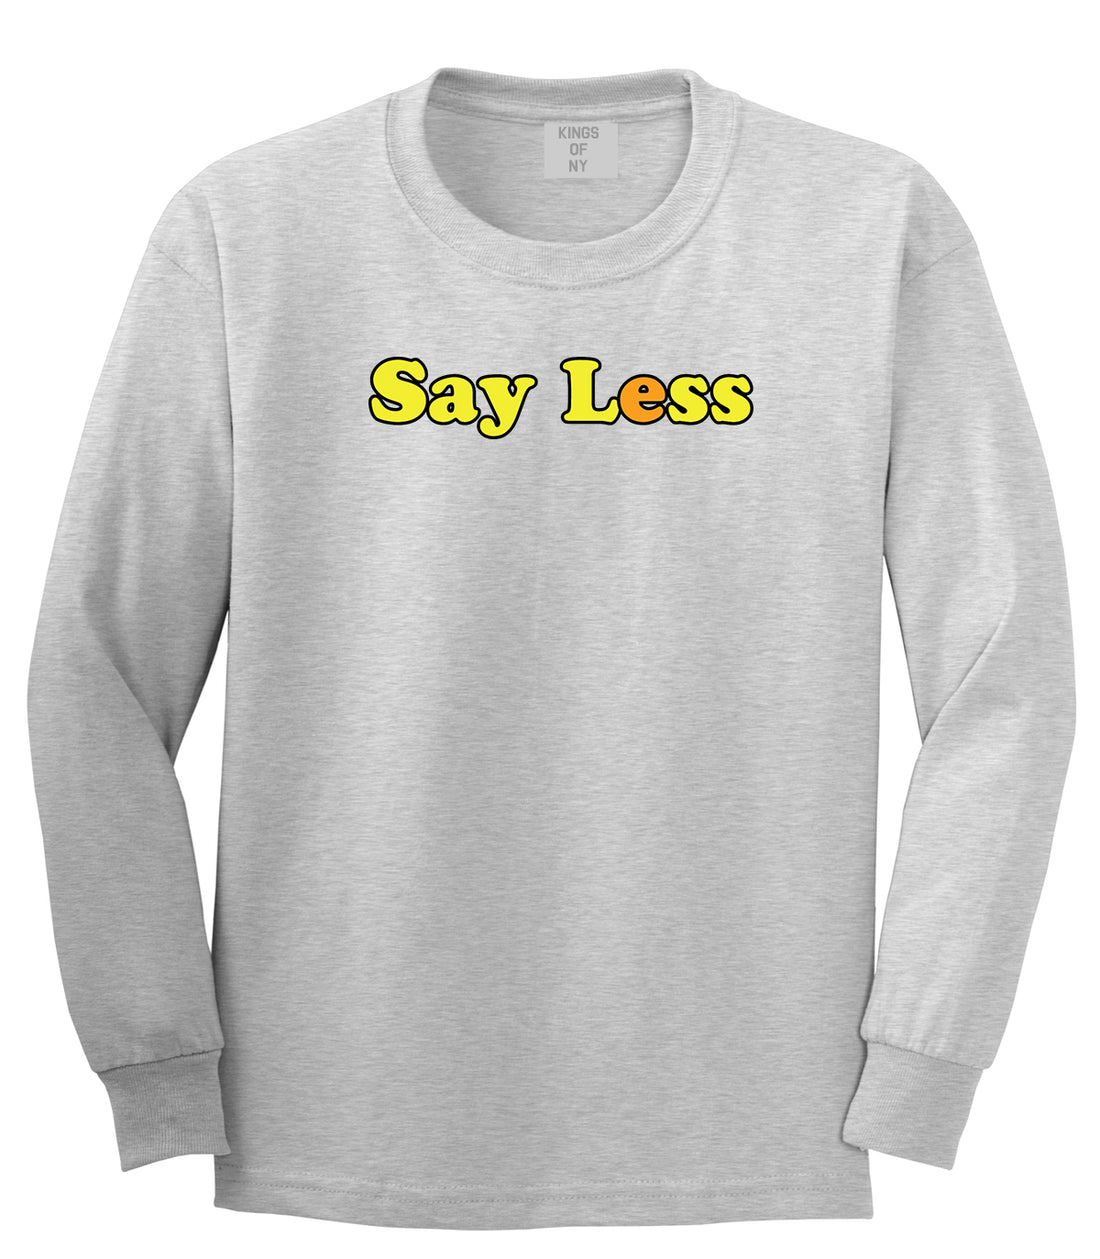 Say Less Mens Long Sleeve T-Shirt Grey